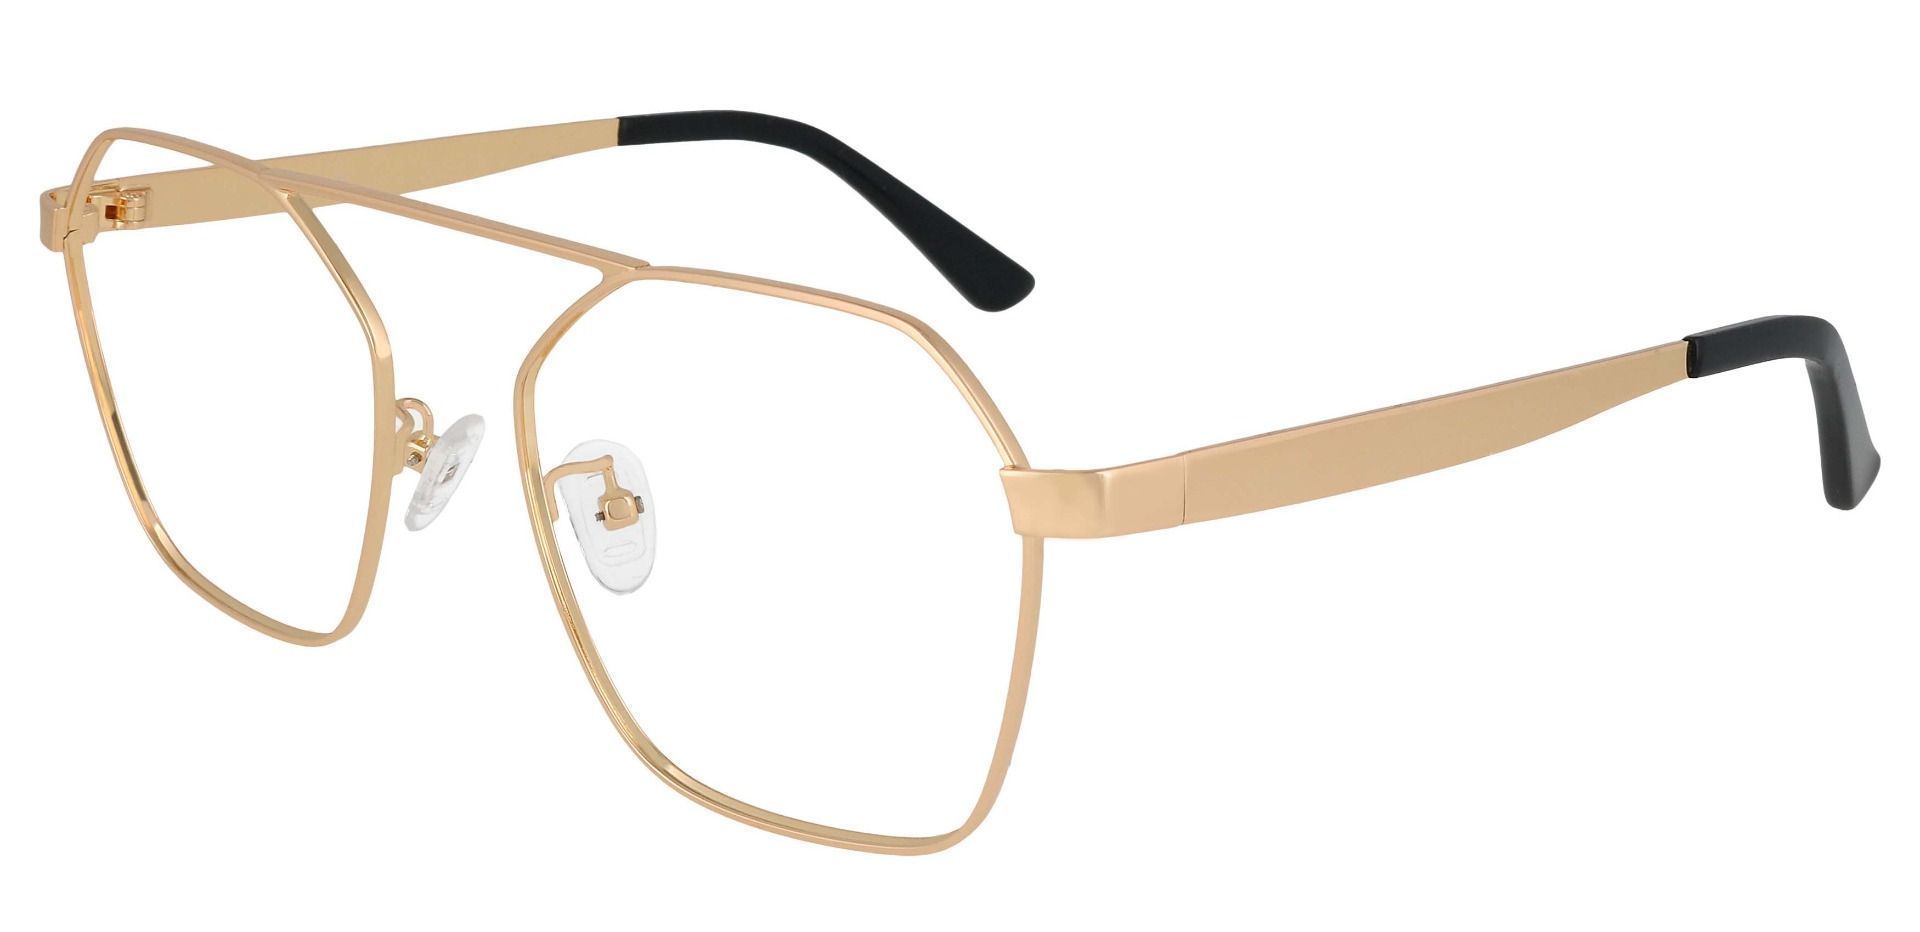 Oswald Aviator Prescription Glasses - Gold | Men's Eyeglasses | Payne ...